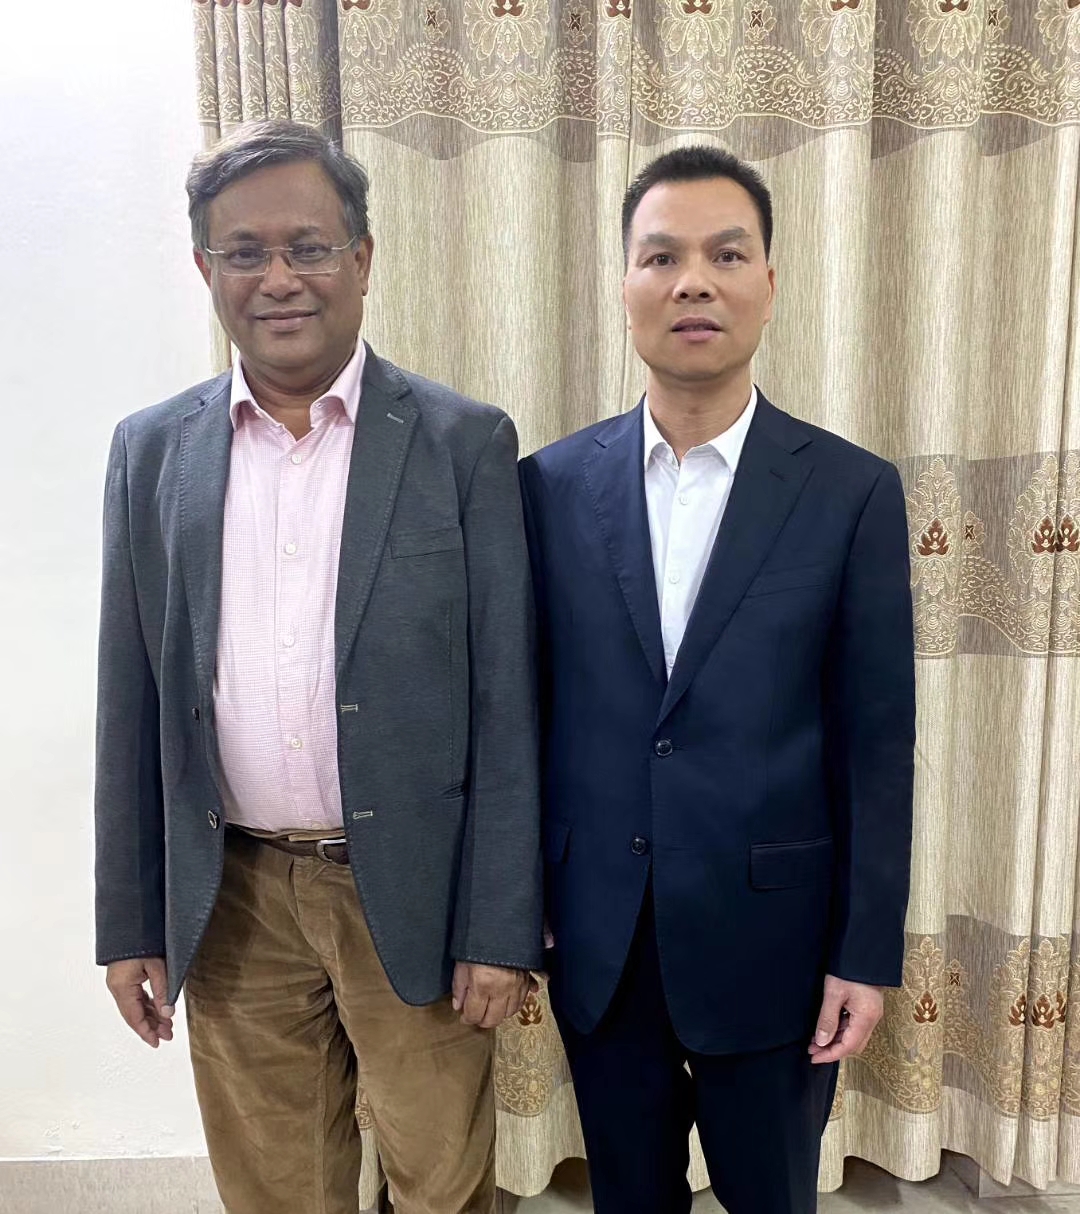 孟加拉国文化部部长接见中亚协华夏文化艺术委员会常务副会长陶烈强